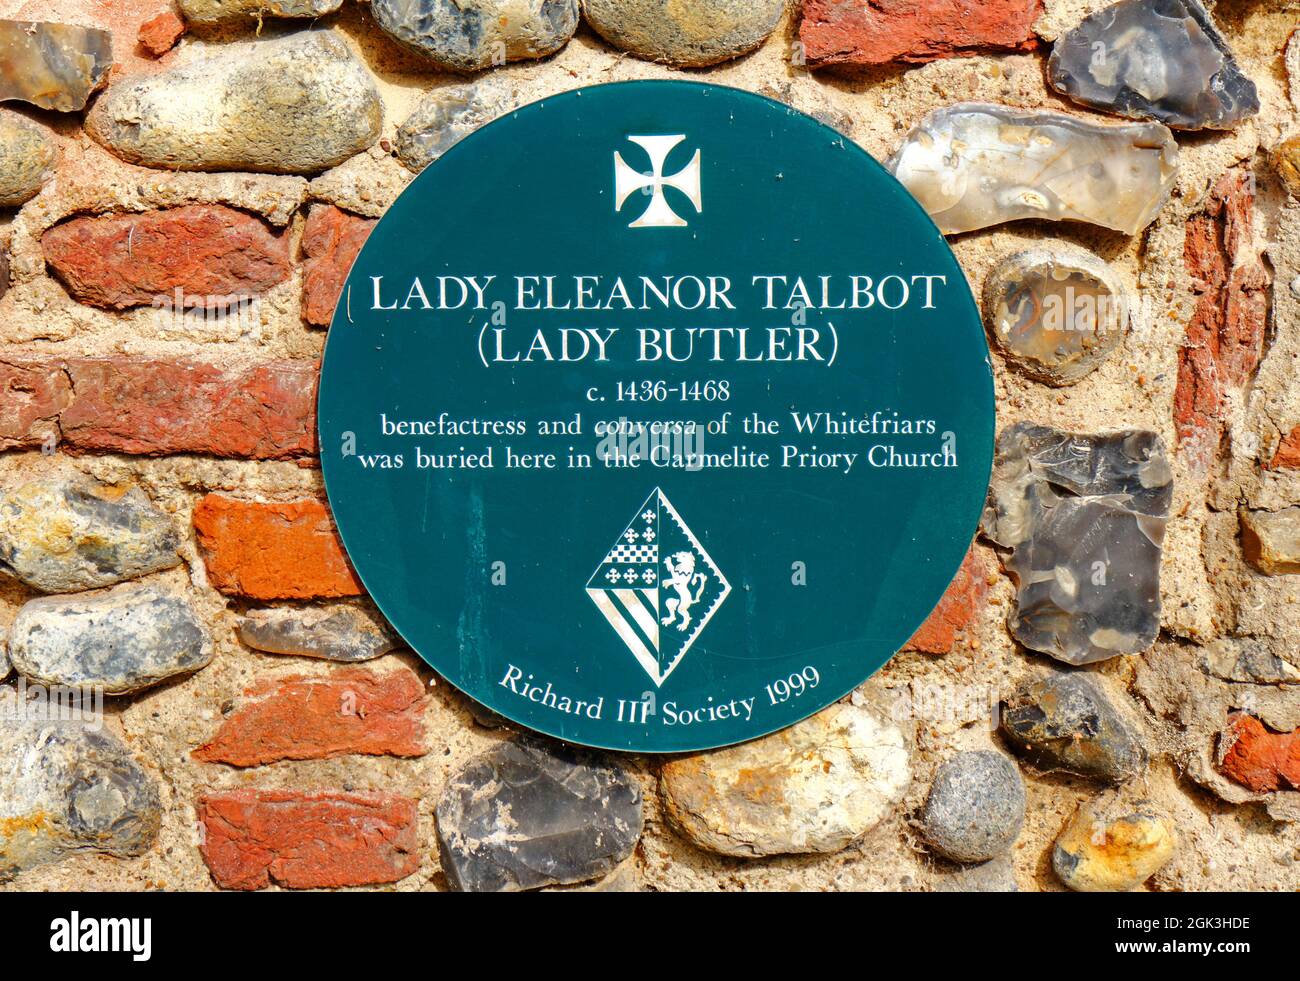 Une plaque reconnaissant le lieu de sépulture de Lady Eleanor Talbot benefatress des Whitefriars à Norwich, Norfolk, Angleterre, Royaume-Uni. Banque D'Images